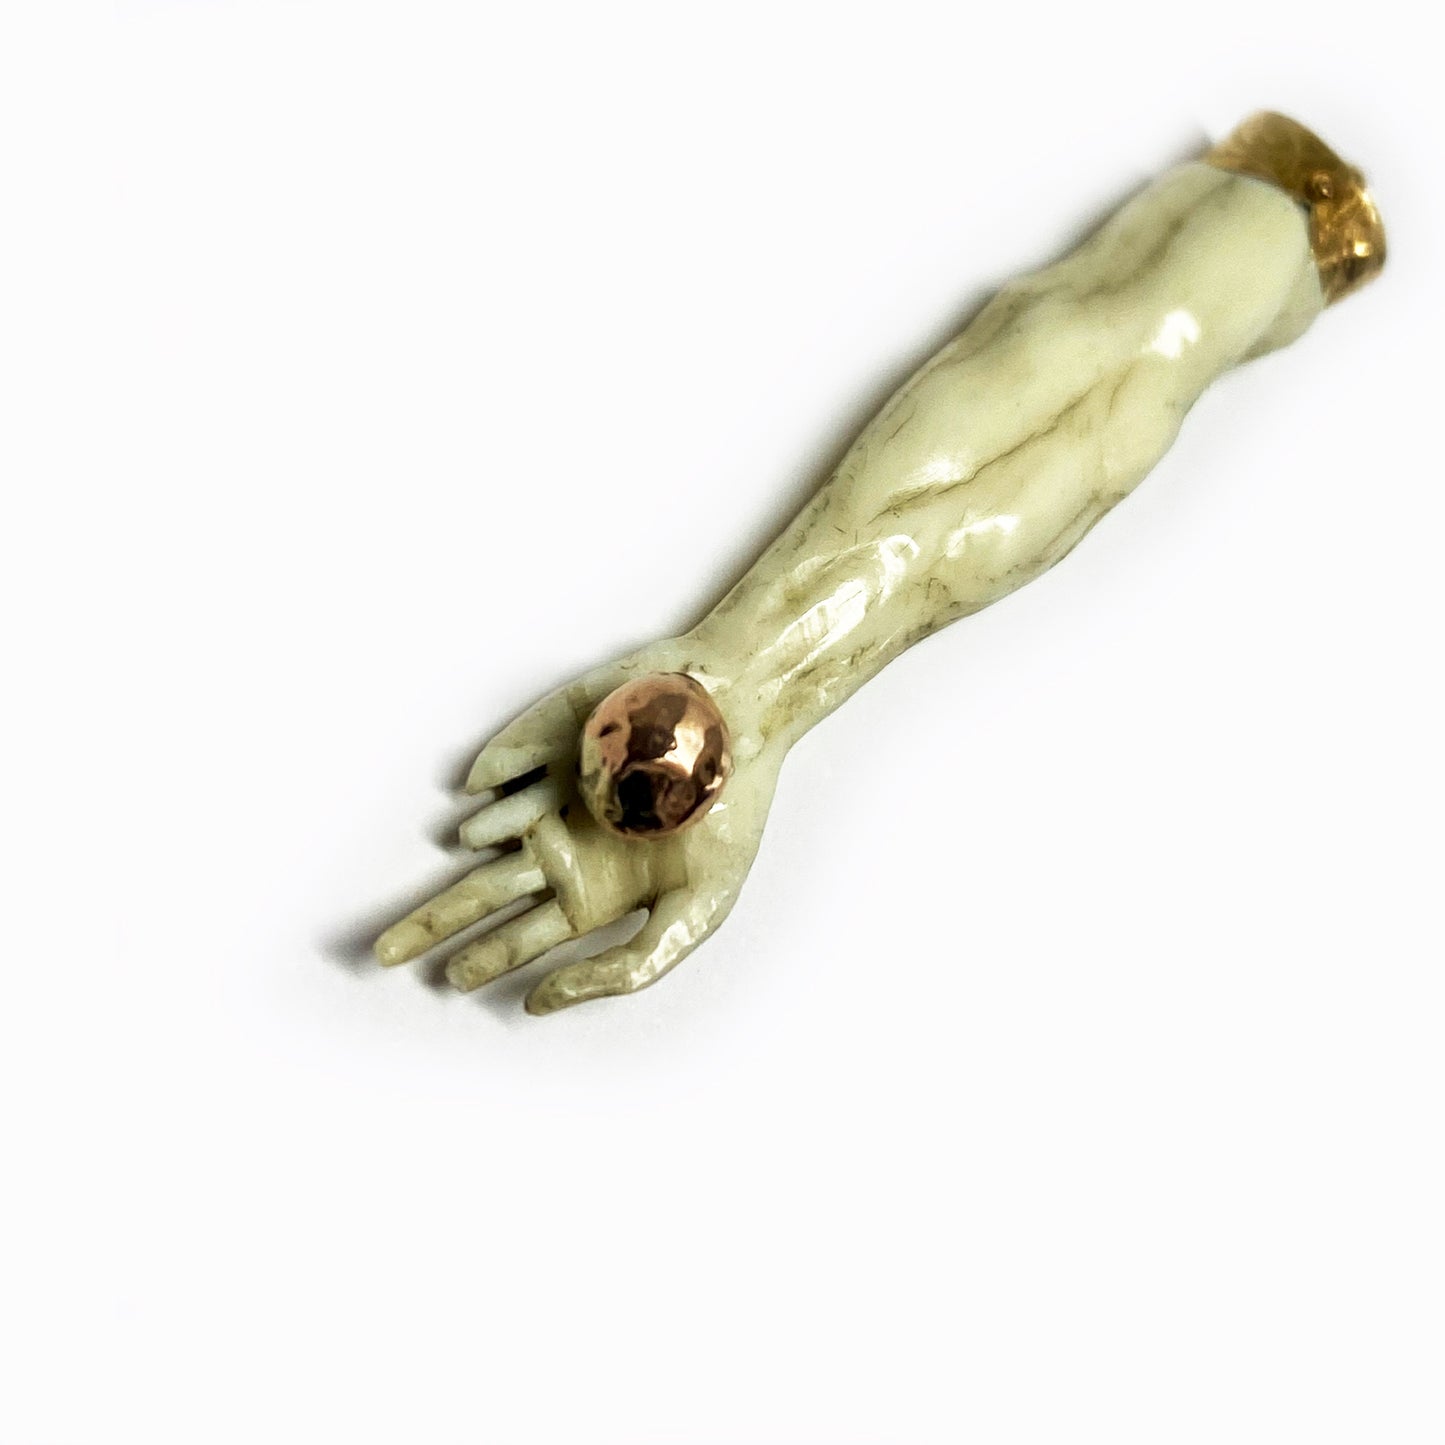 Antique 9K Gold Bone Arm Pendant, Victorian Christ Arm Charm